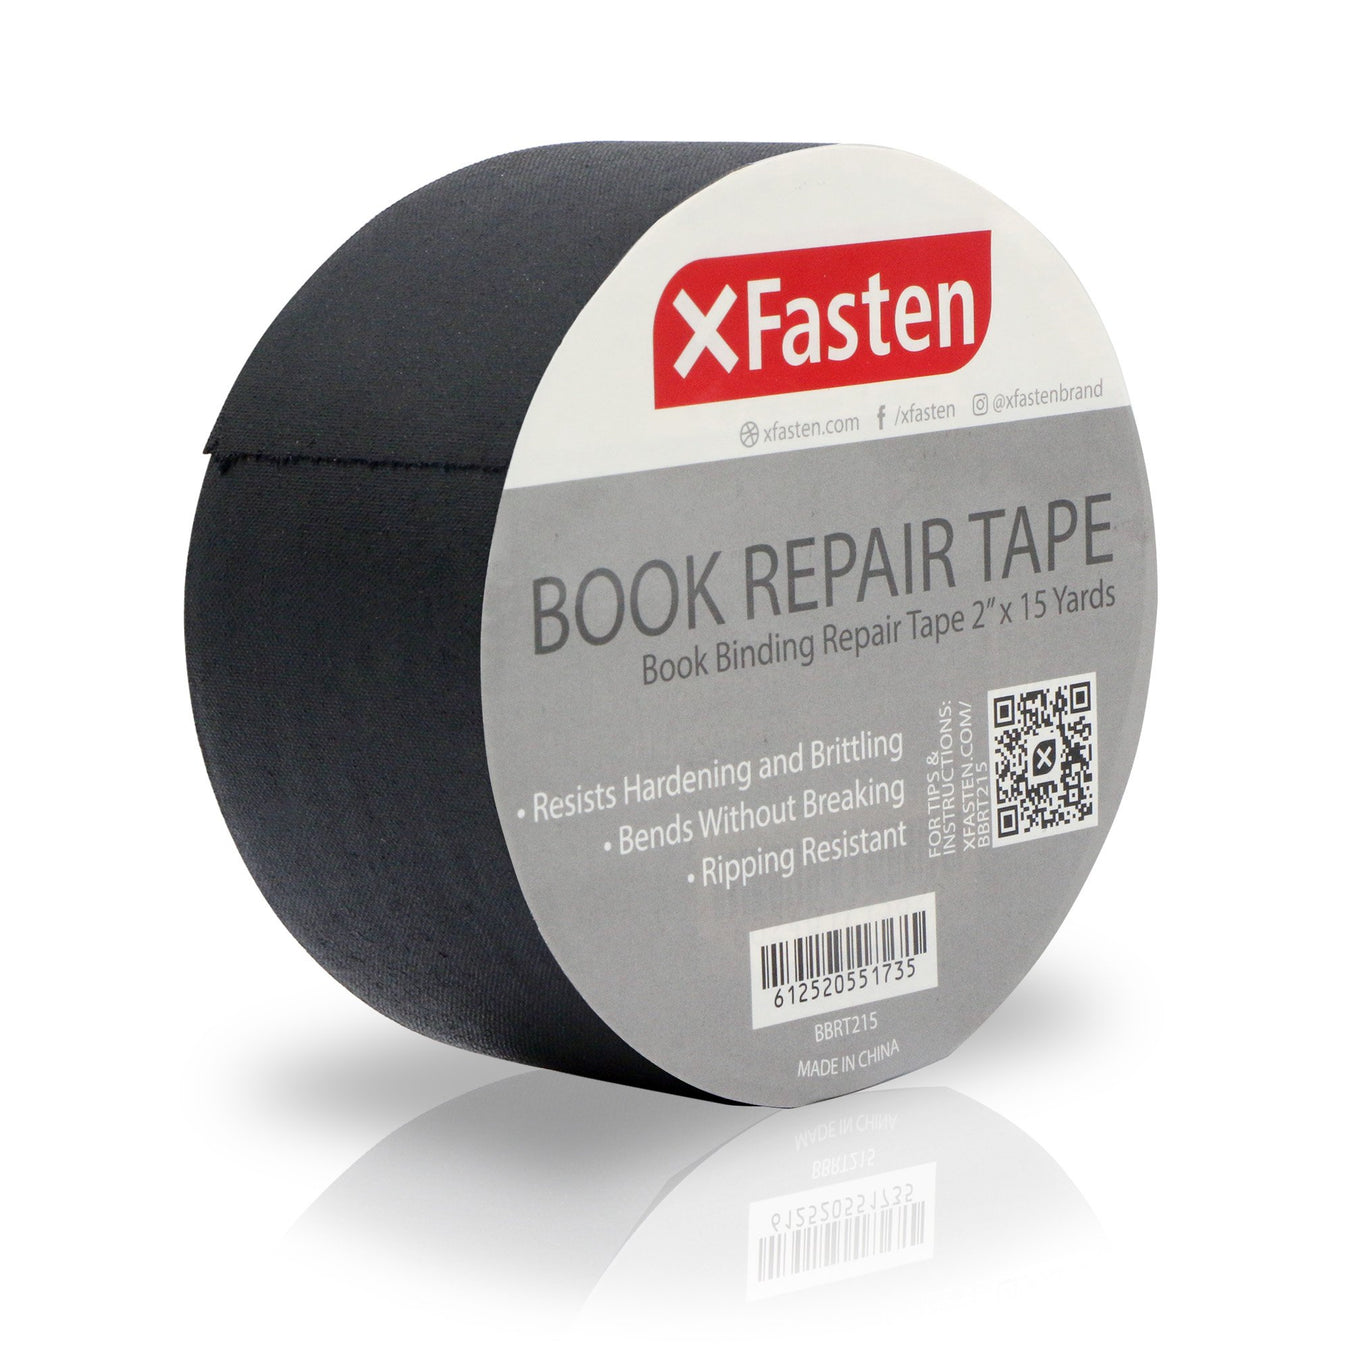 Book Binding Repair Tape - XFasten